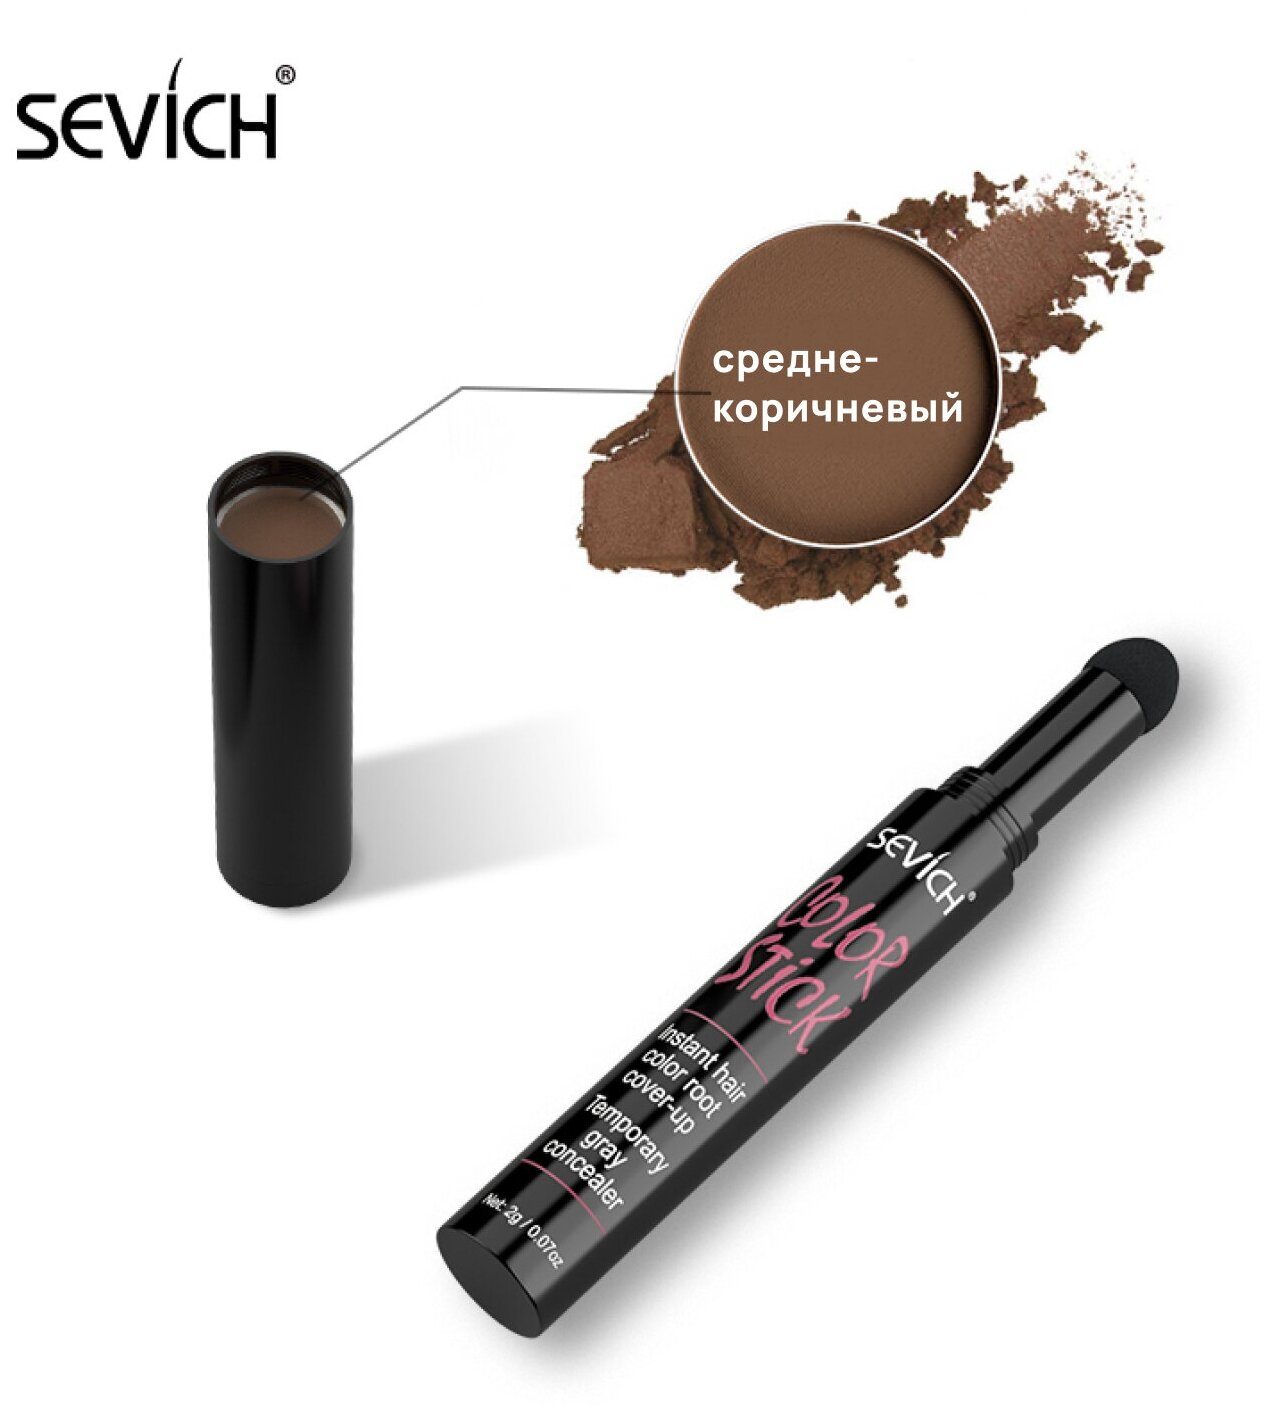 Sevich (Севич) Маскирующий стик с пудрой, камуфляж для линии роста волос, средне-коричневый, 2 г